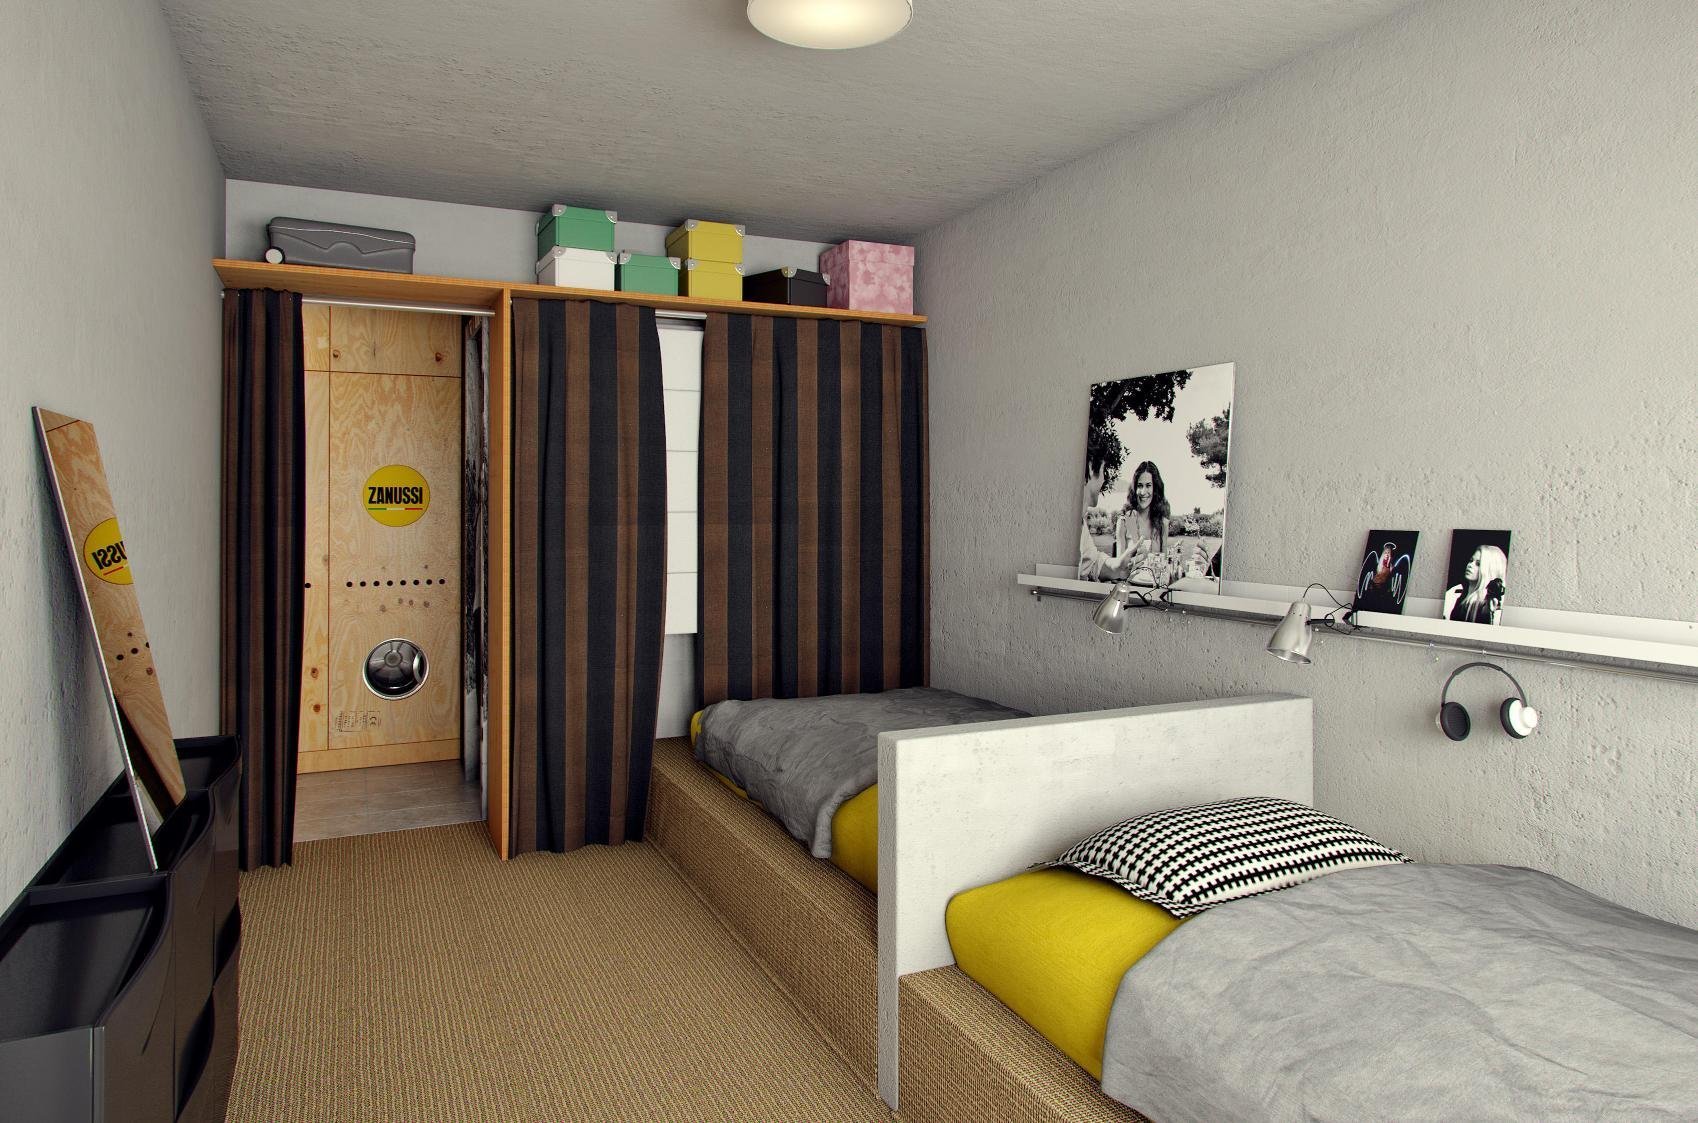 Как обустроить интерьер комнаты в общежитии